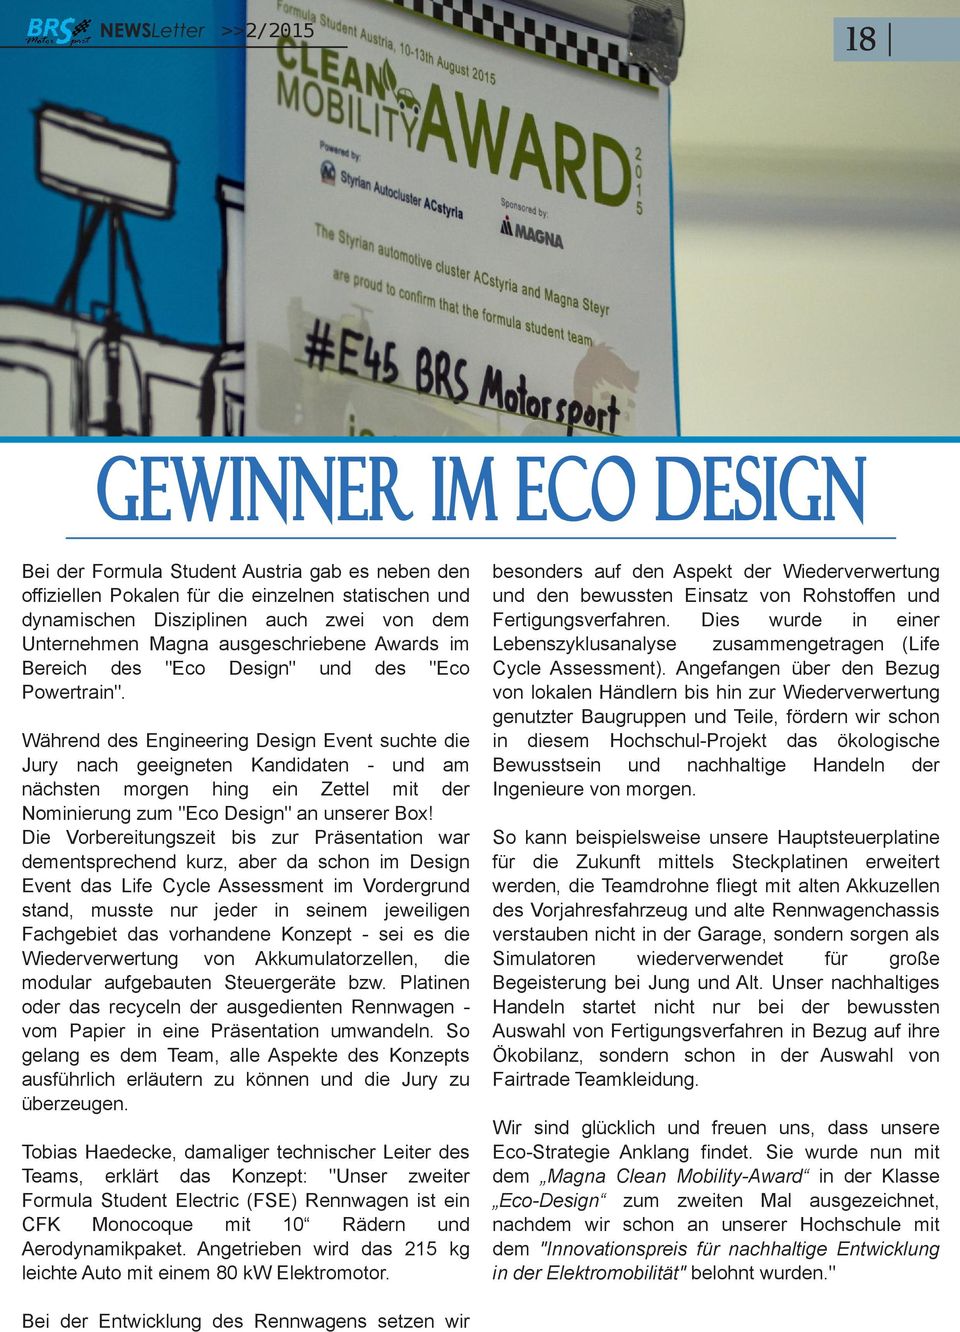 Während des Engineering Design Event suchte die Jury nach geeigneten Kandidaten und am nächsten morgen hing ein Zettel mit der Nominierung zum "Eco Design" an unserer Box!